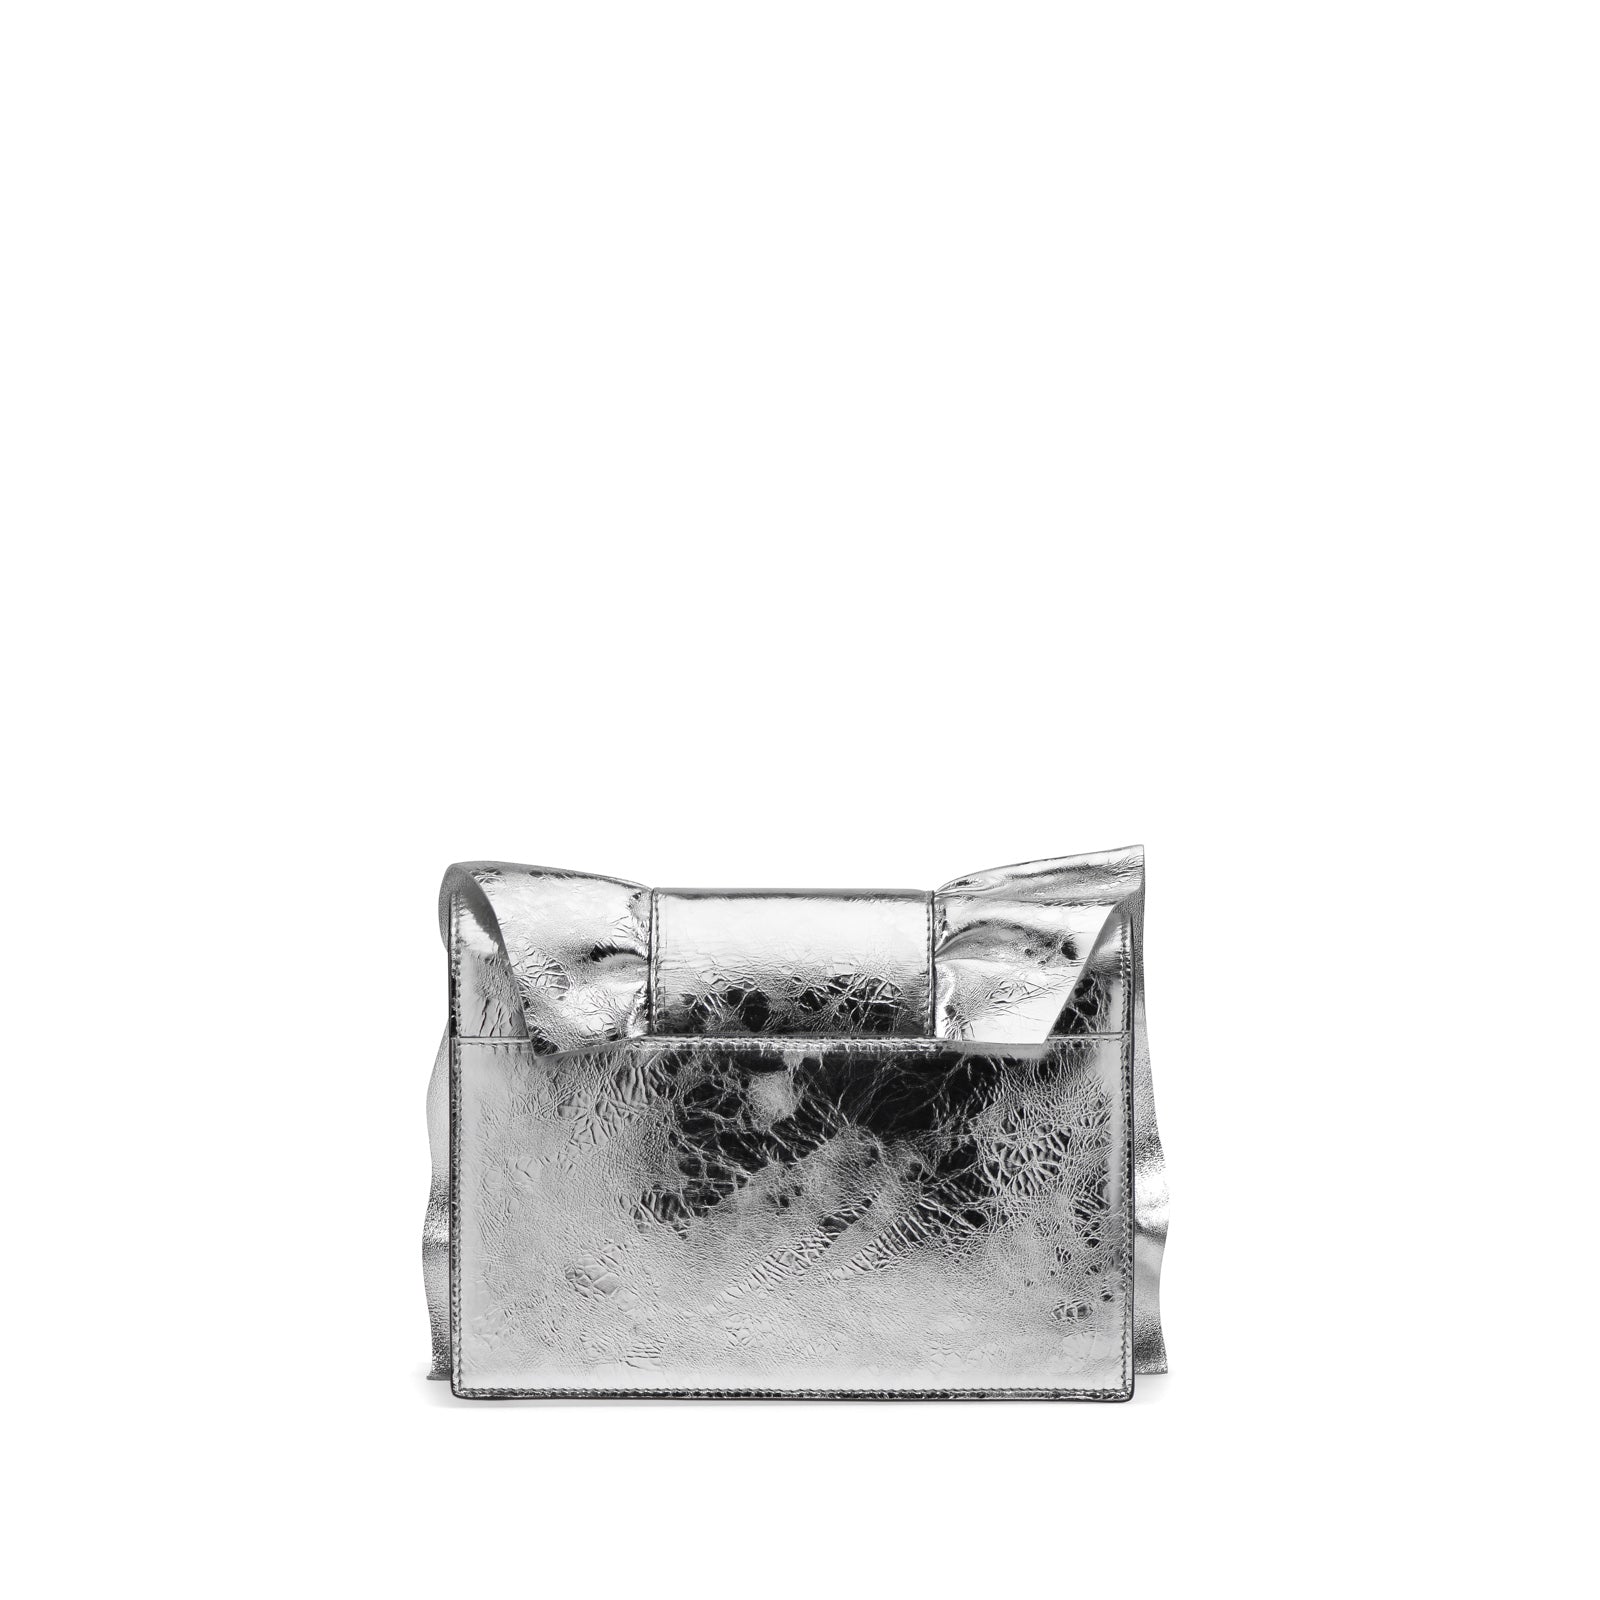 Sr1 shoulder bag - Silver